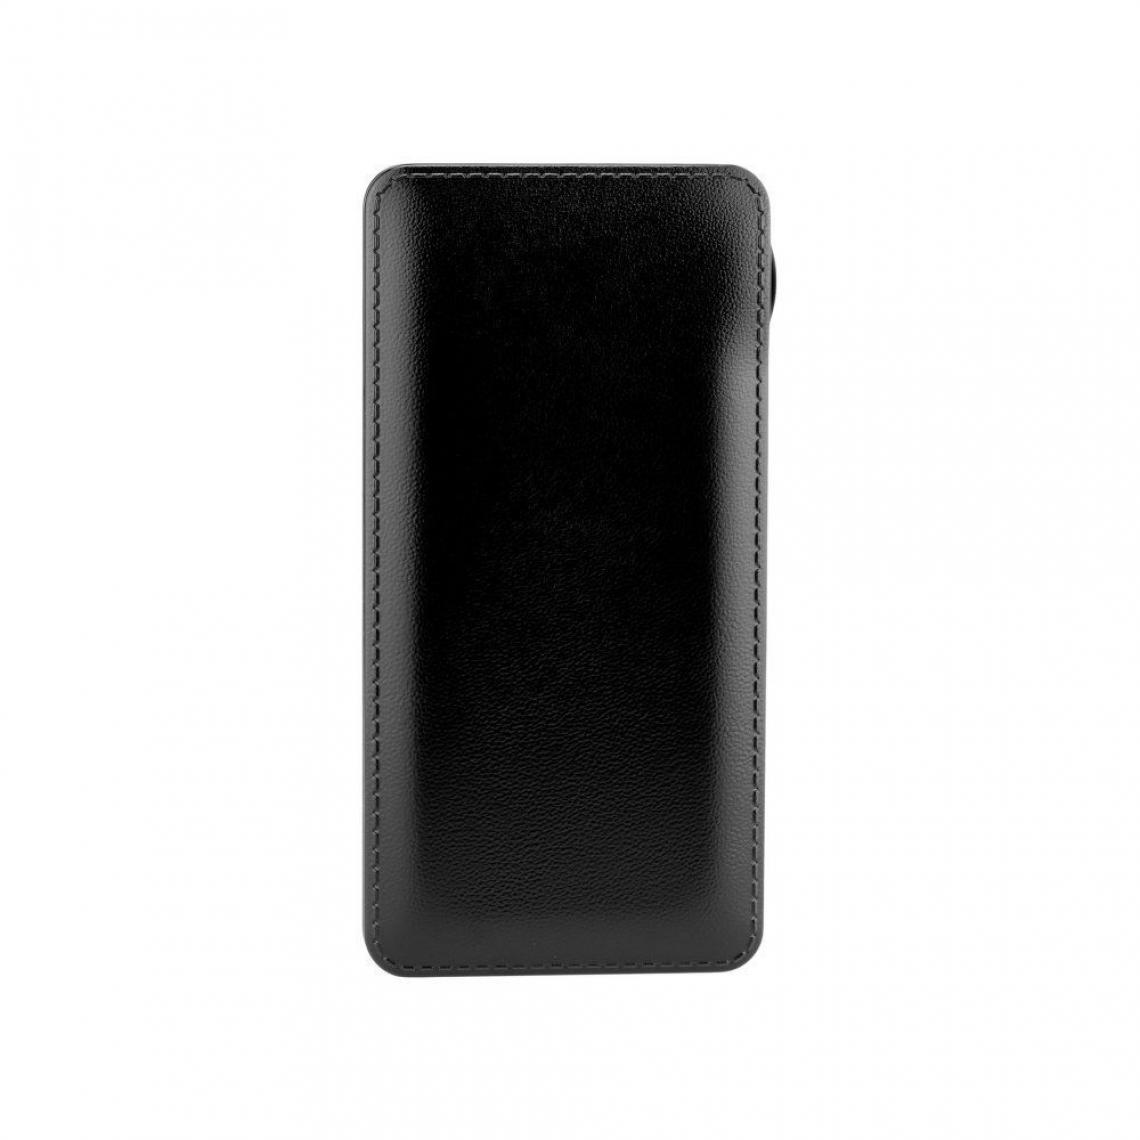 Ozzzo - Chargeur batterie externe 20000 mAh powerbank ozzzo noir pour SAMSUNG Galaxy Note 9 N960F - Autres accessoires smartphone